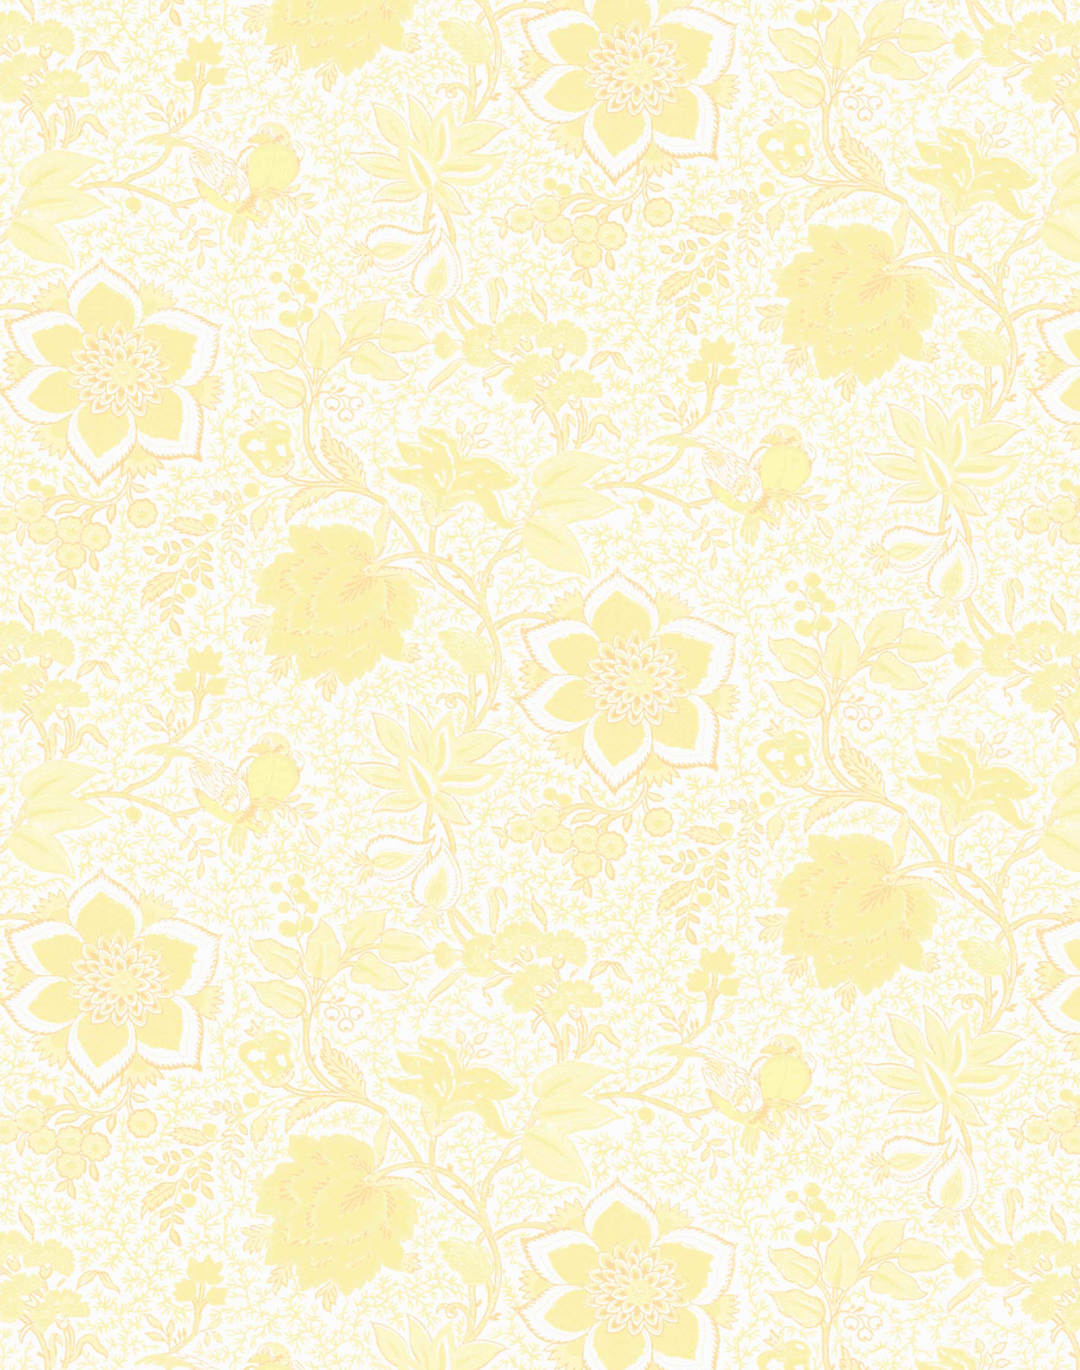 Folie Flora, Buttermilk Yellow